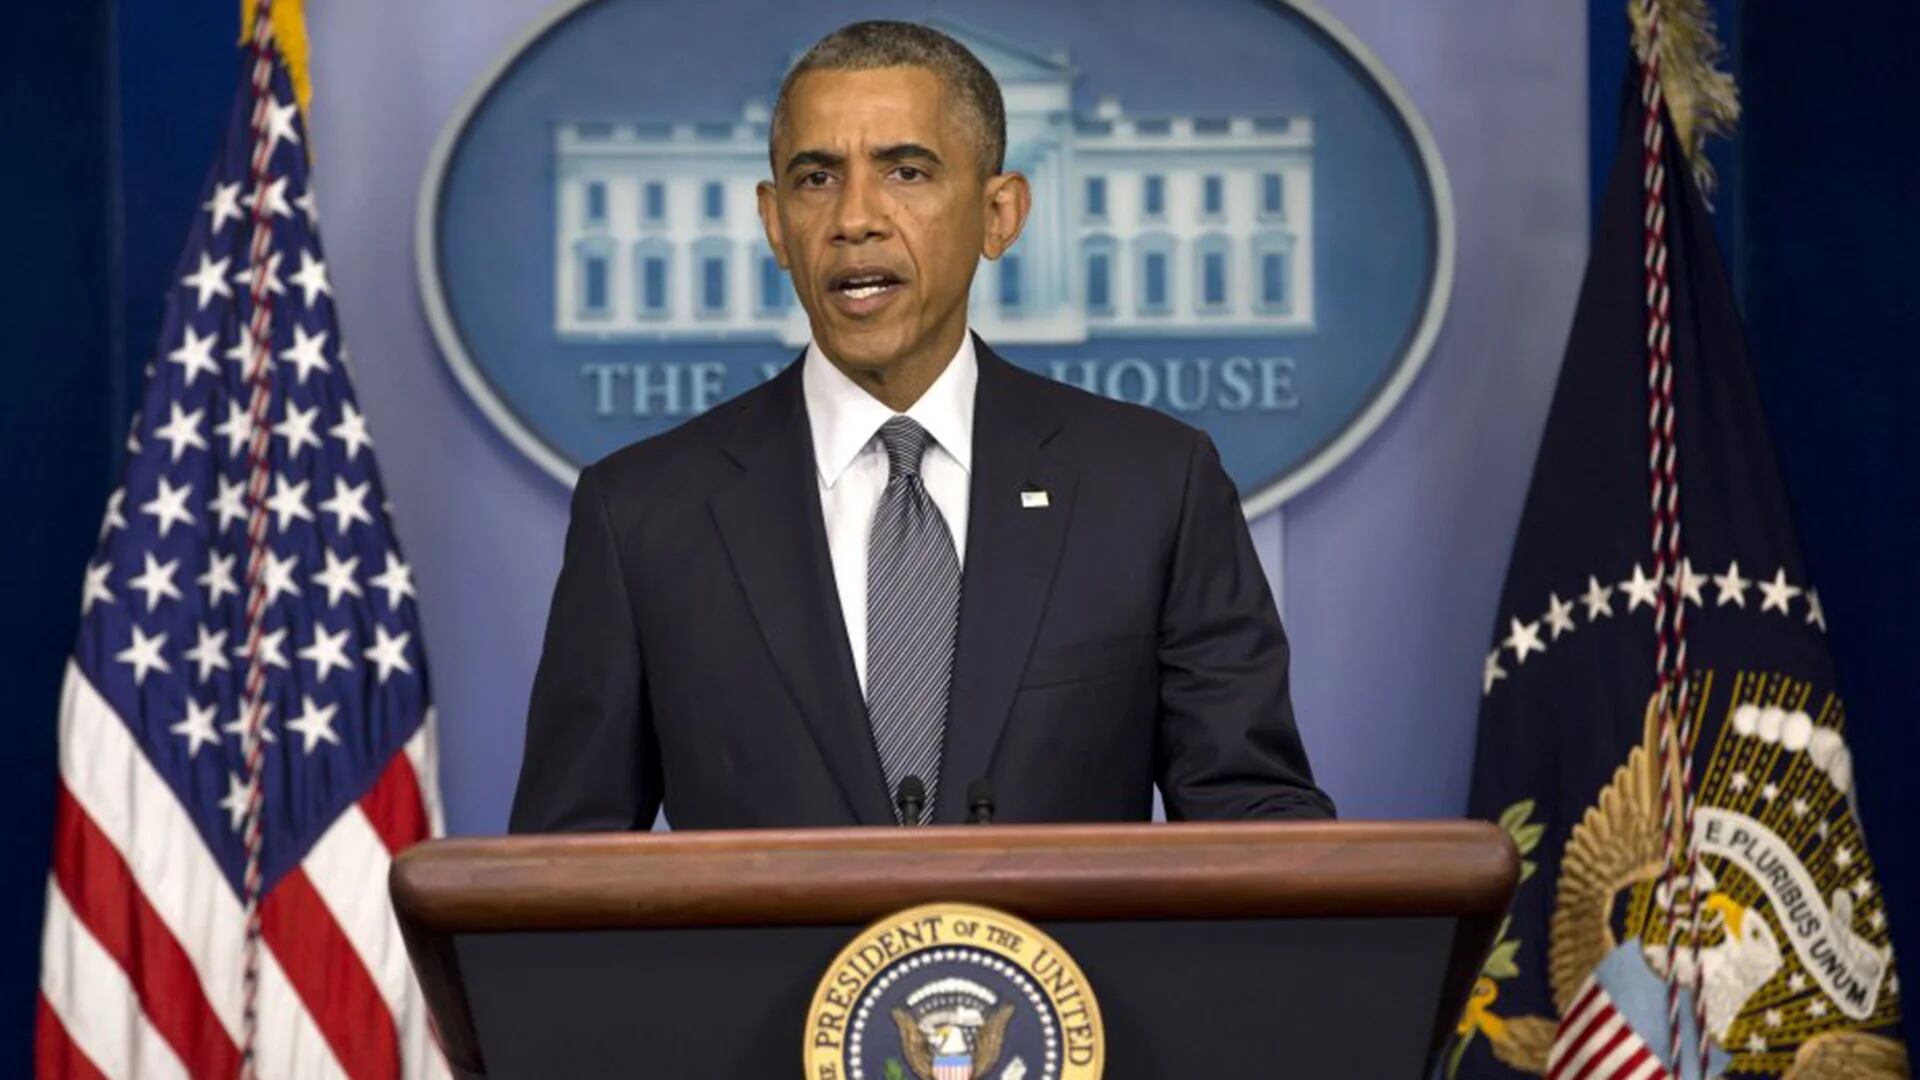 Barack Obama en conferencia de prensa (Imagen de archivo)